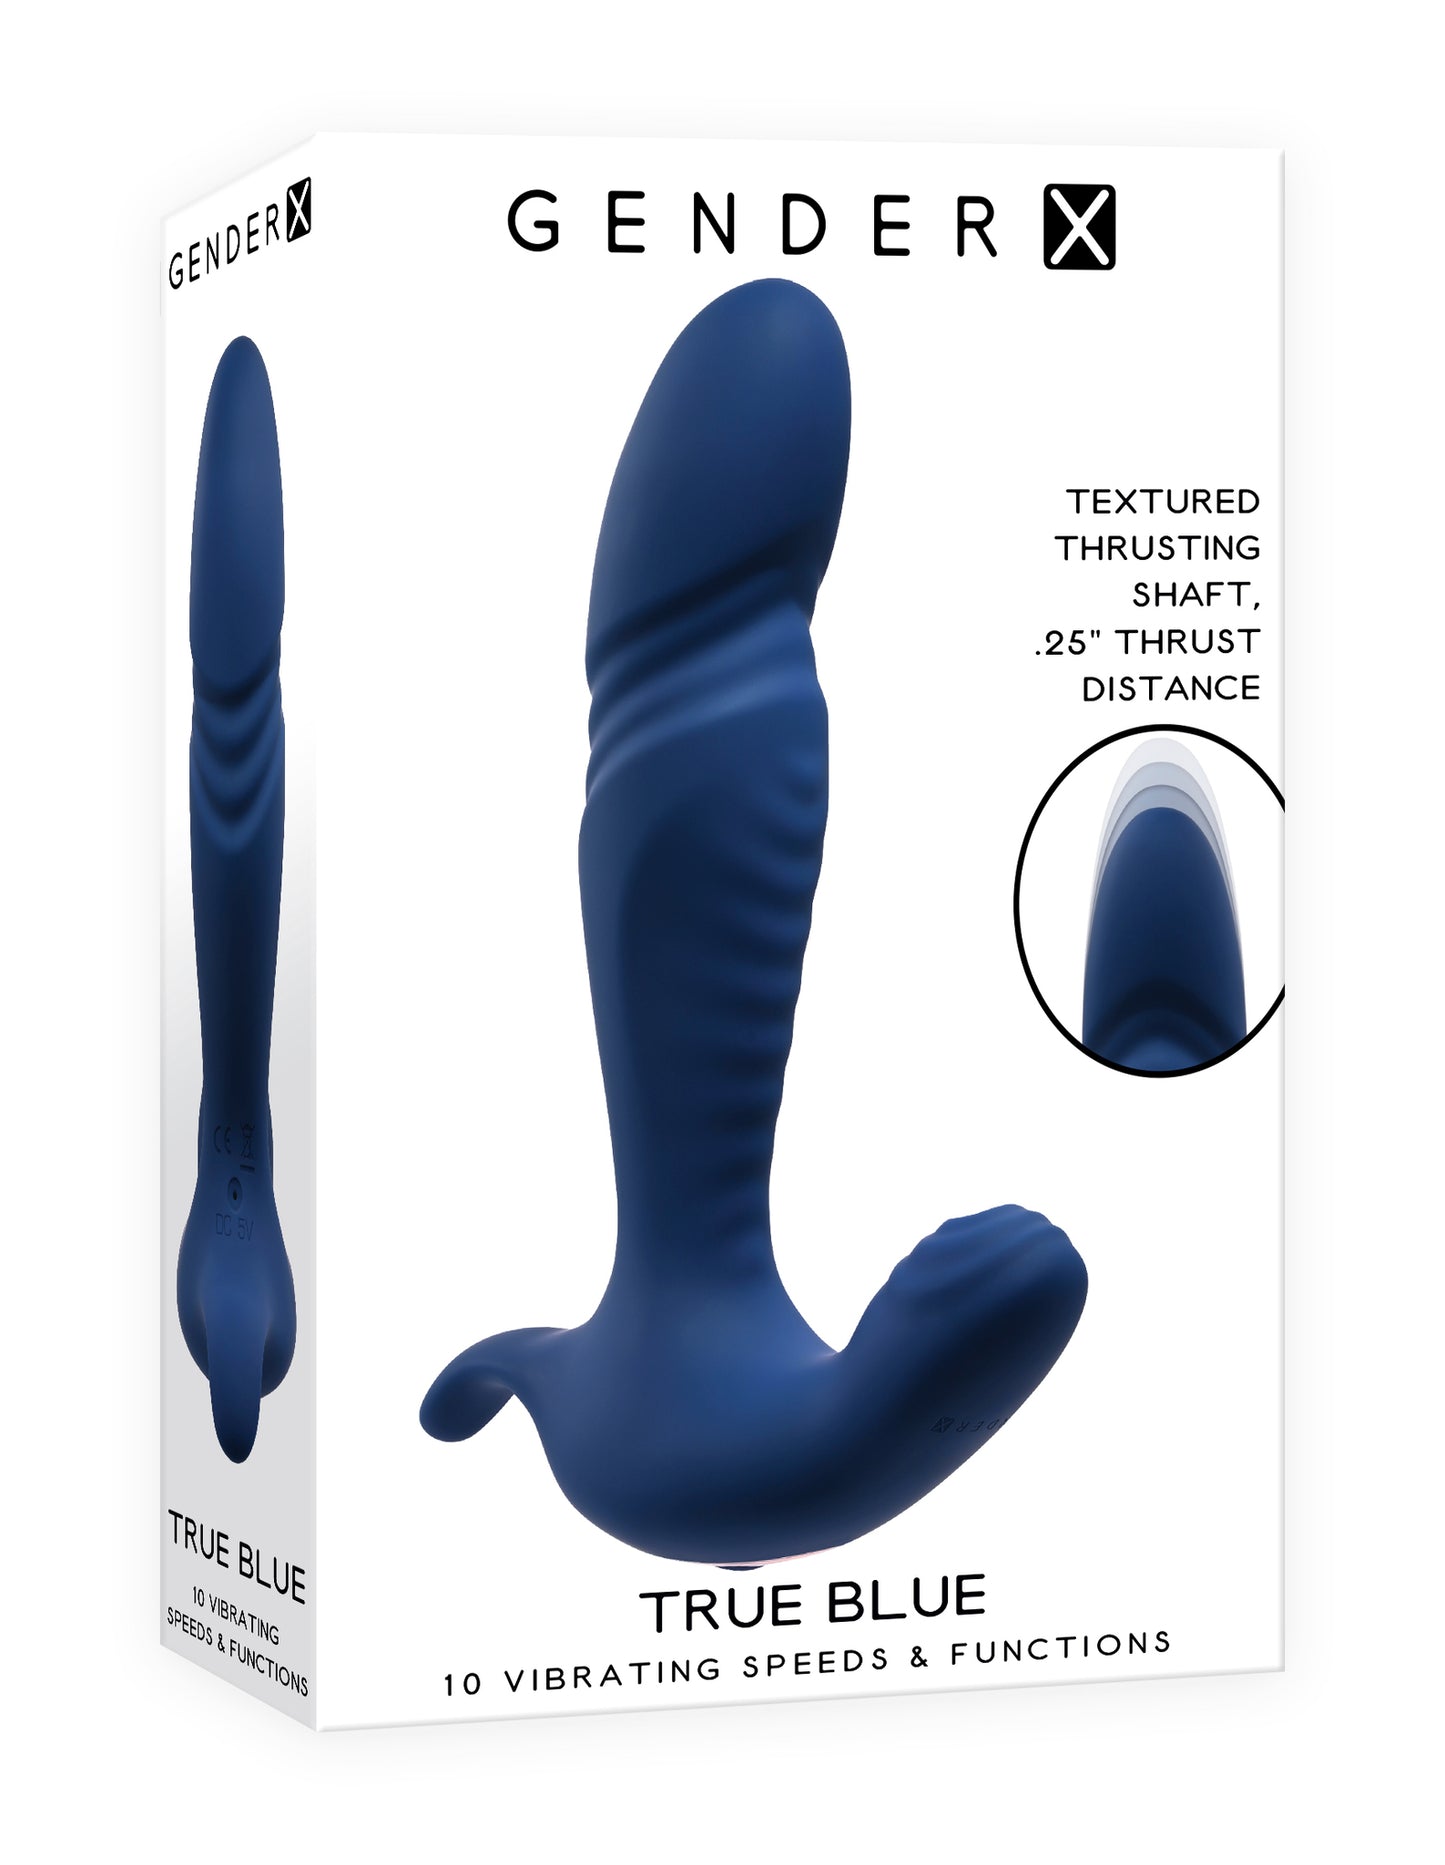 Gender X: True Blue